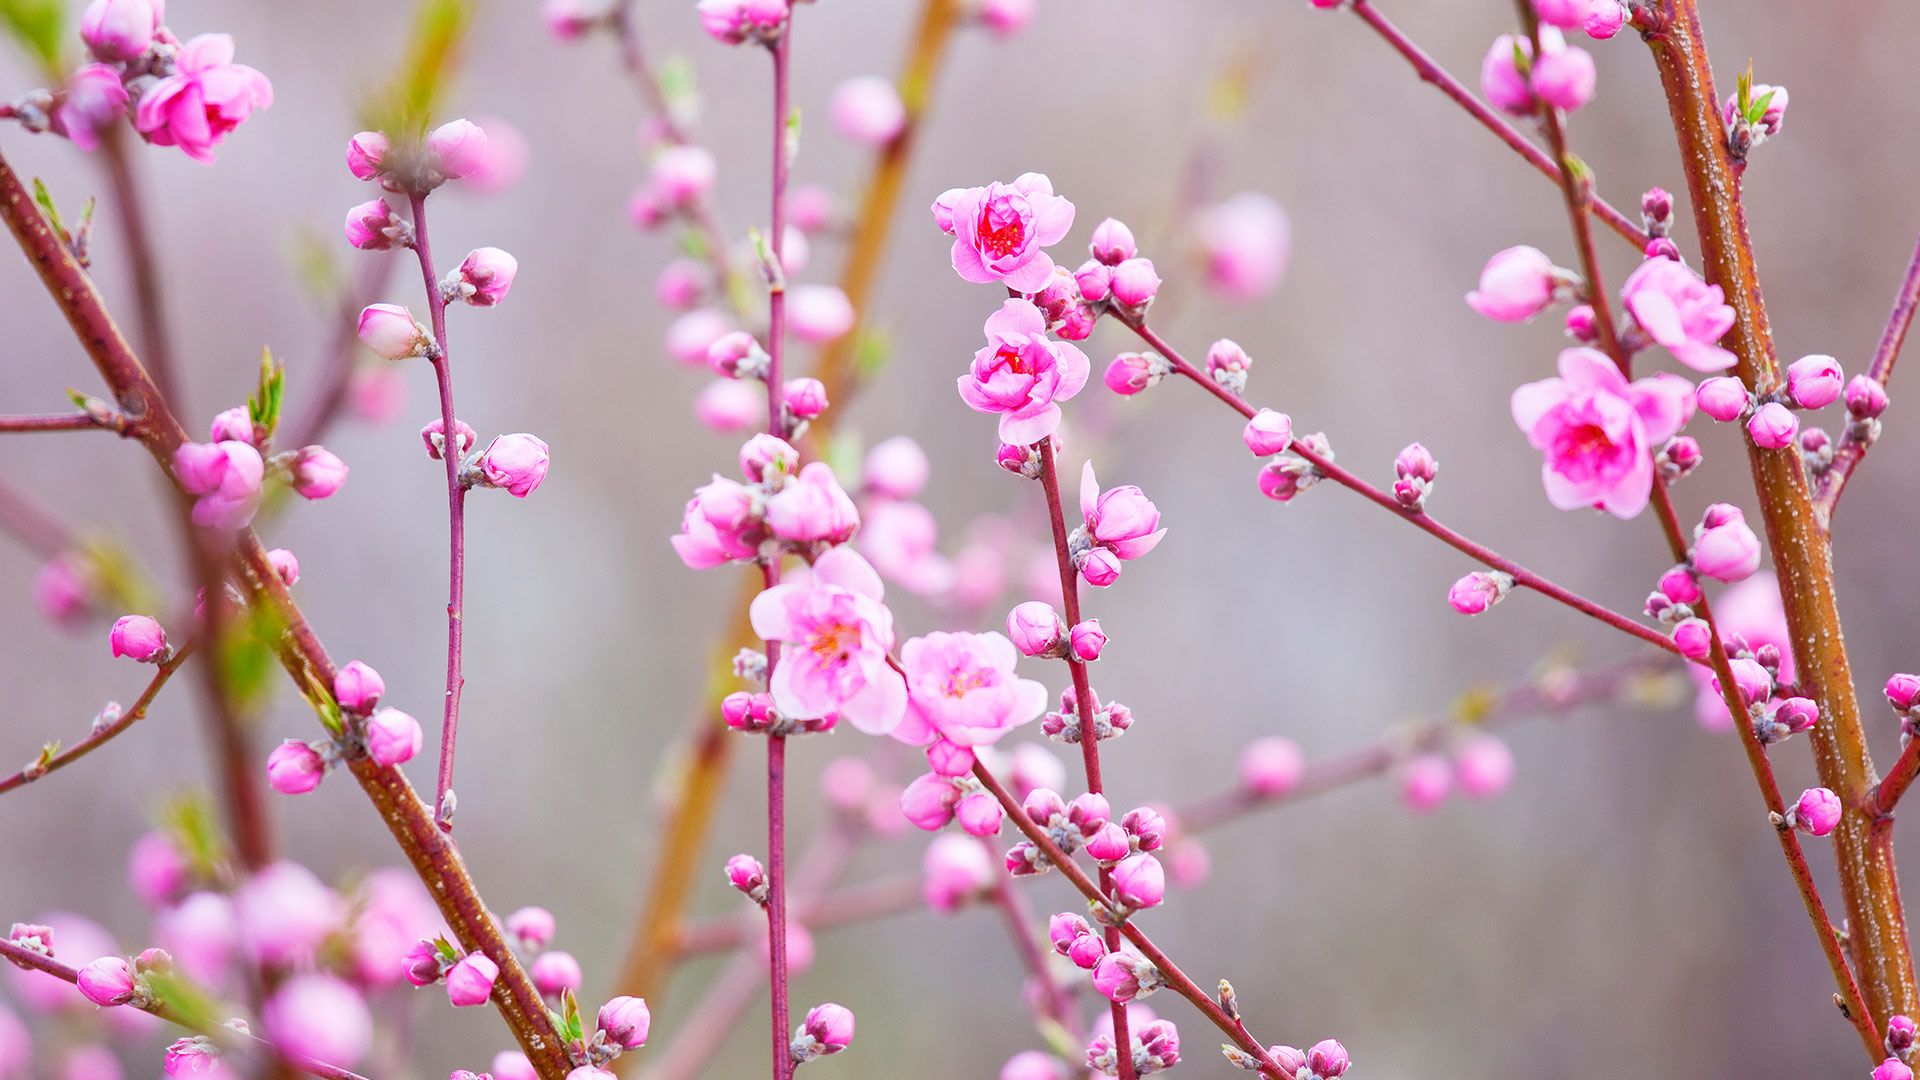 والپیپر فوق العاده زیبا از شکوفه های صورتی درخت هلو